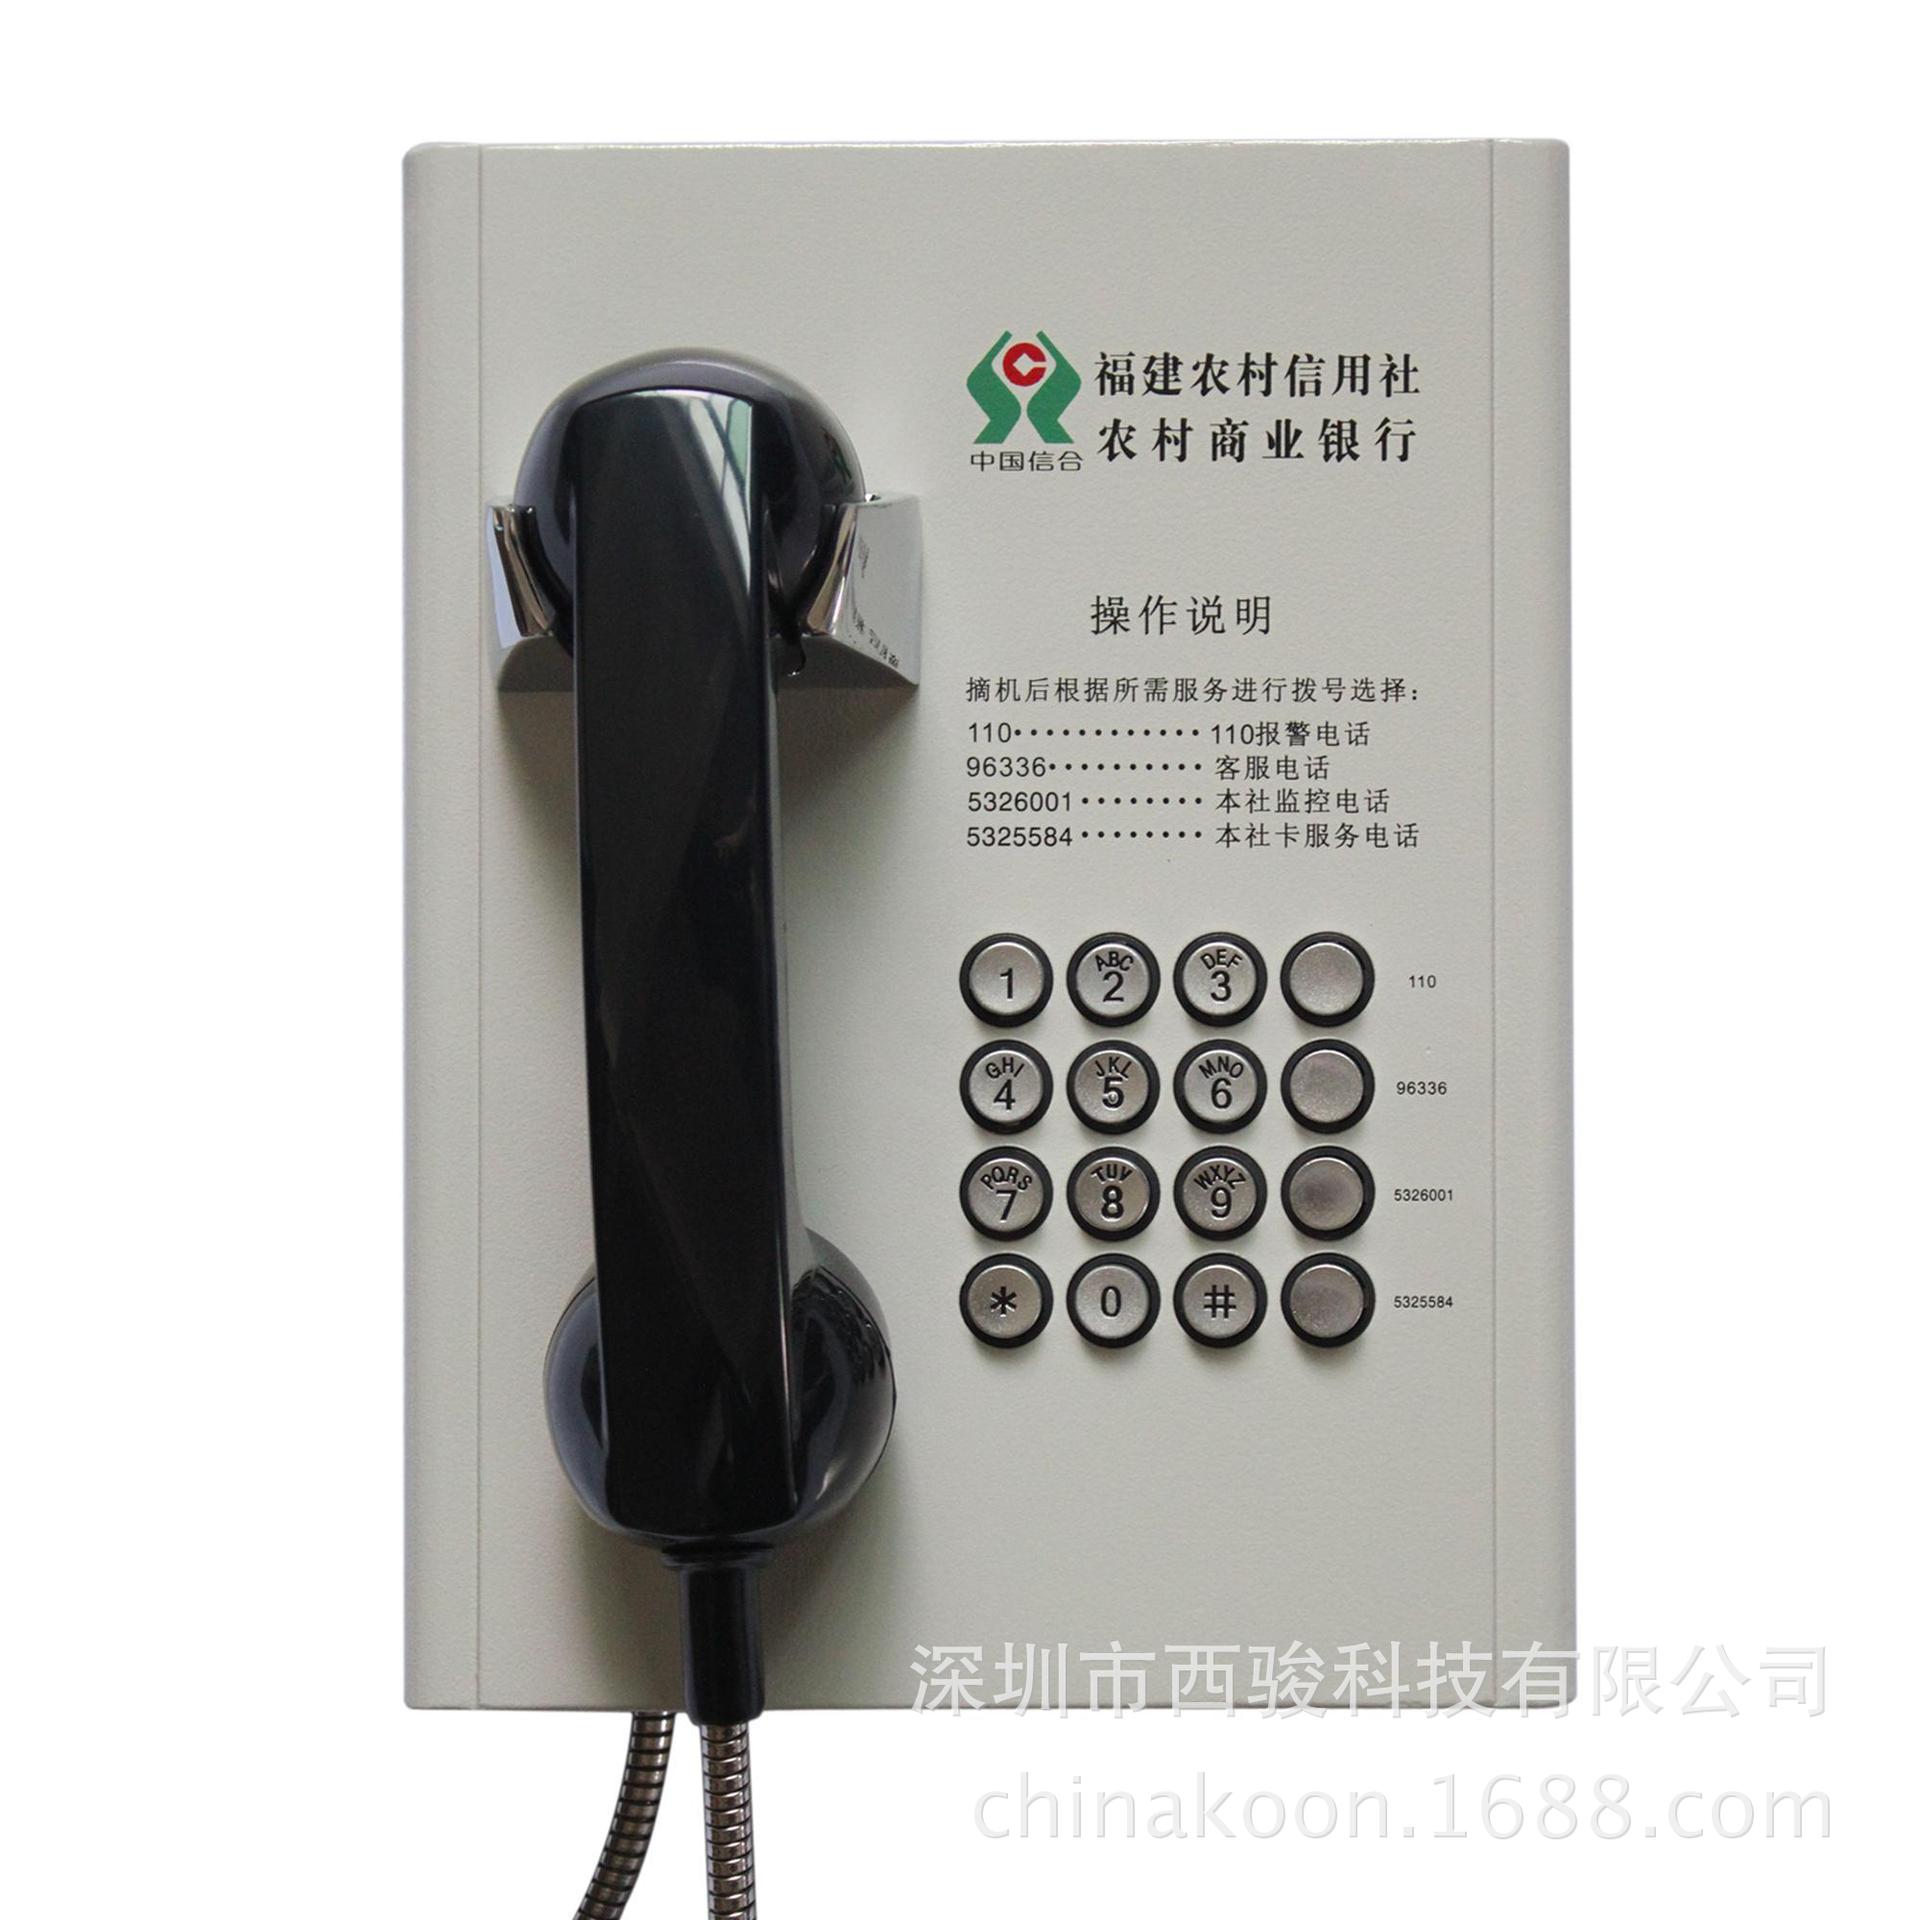 其他固定电话-南京银行电话机,通用型银行专线